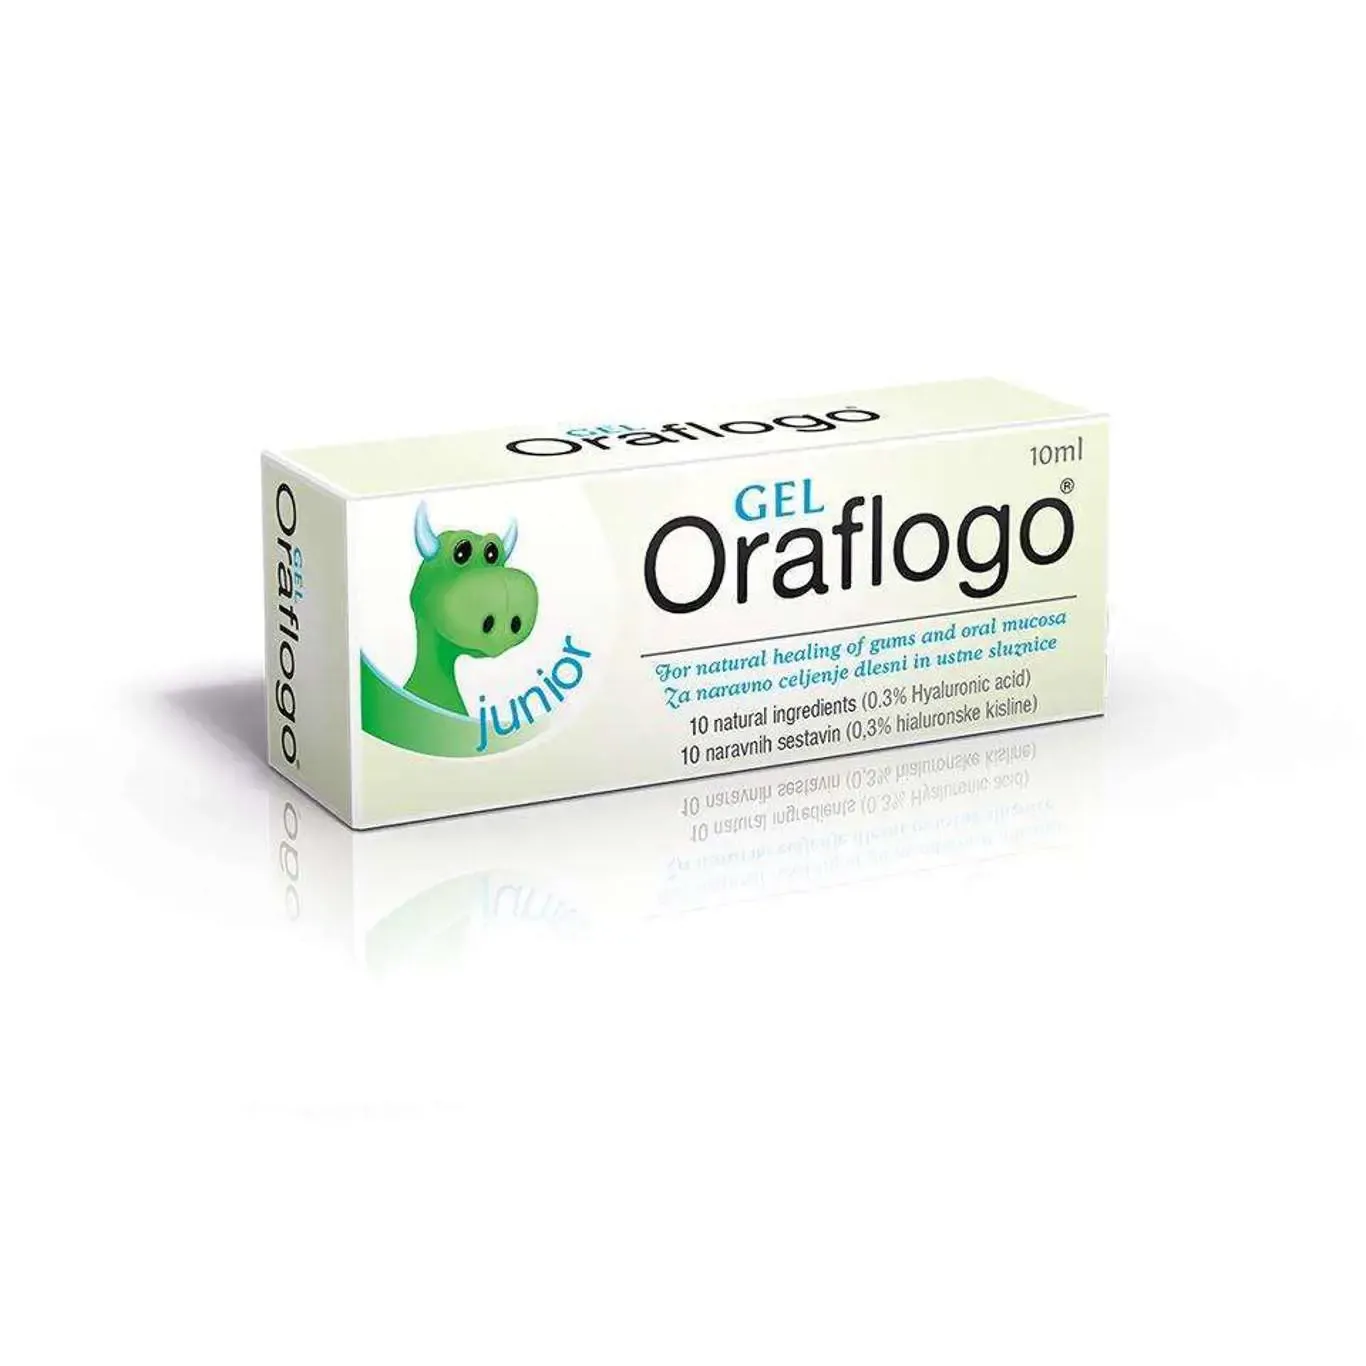 ORAFLOGO Junior gel dành cho trẻ em và thanh thiếu niên